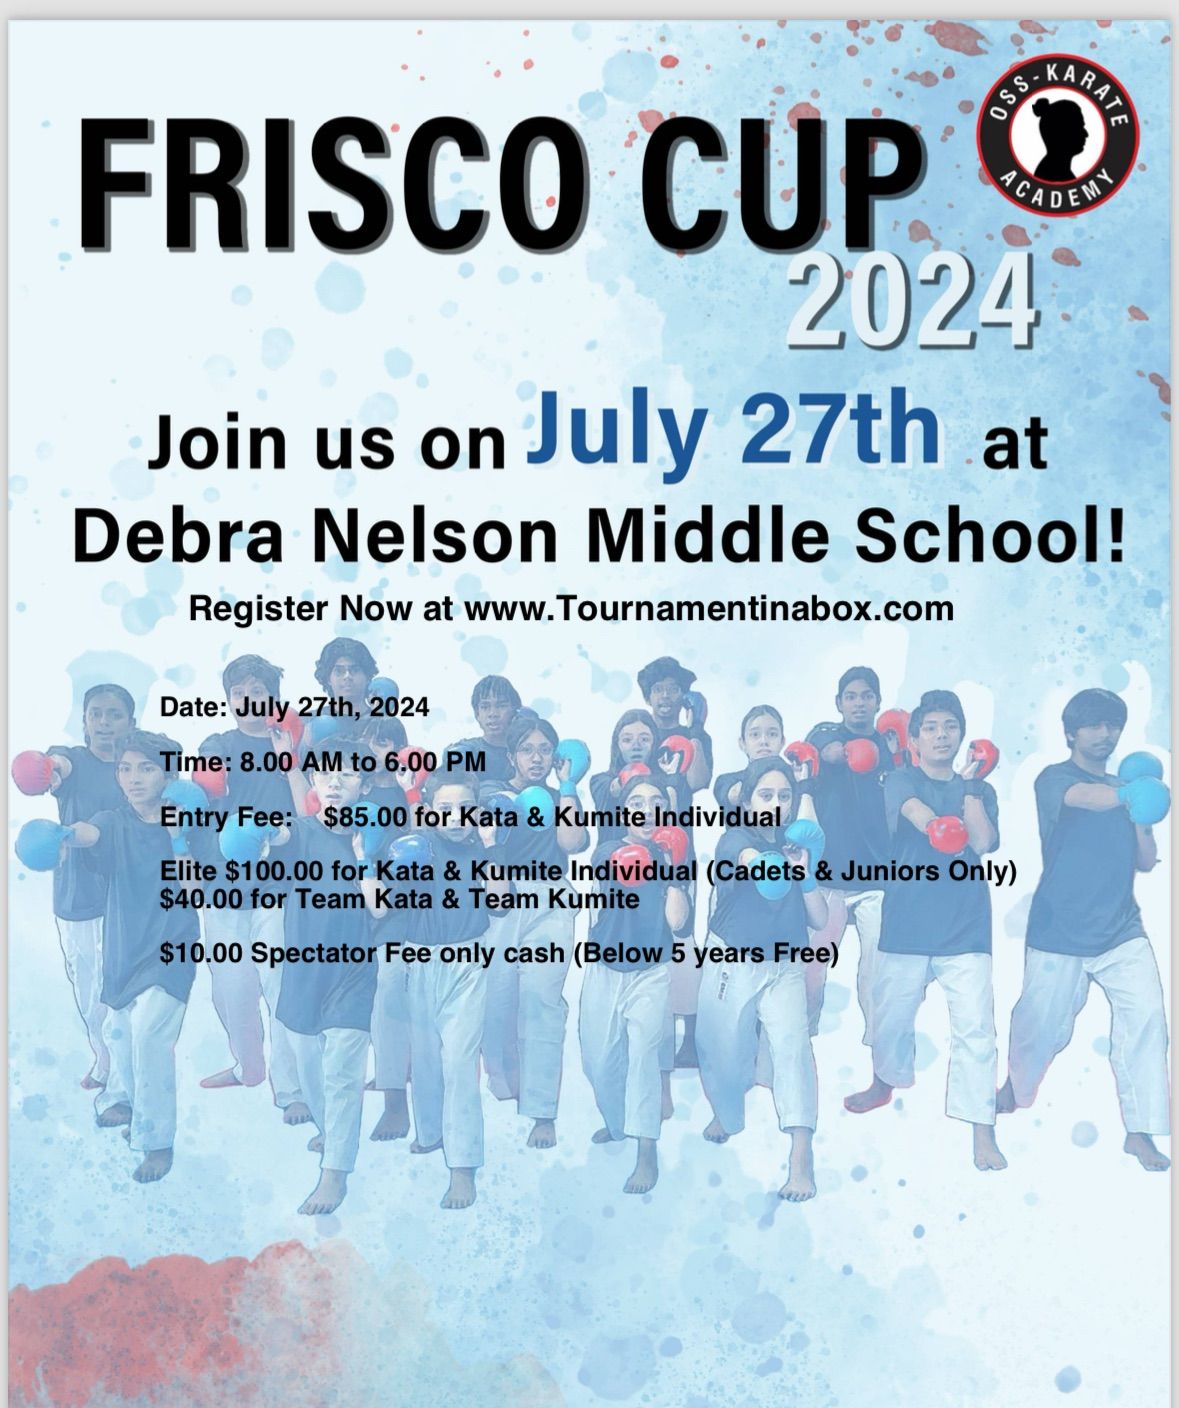 FRISCO CUP Texas 2024 